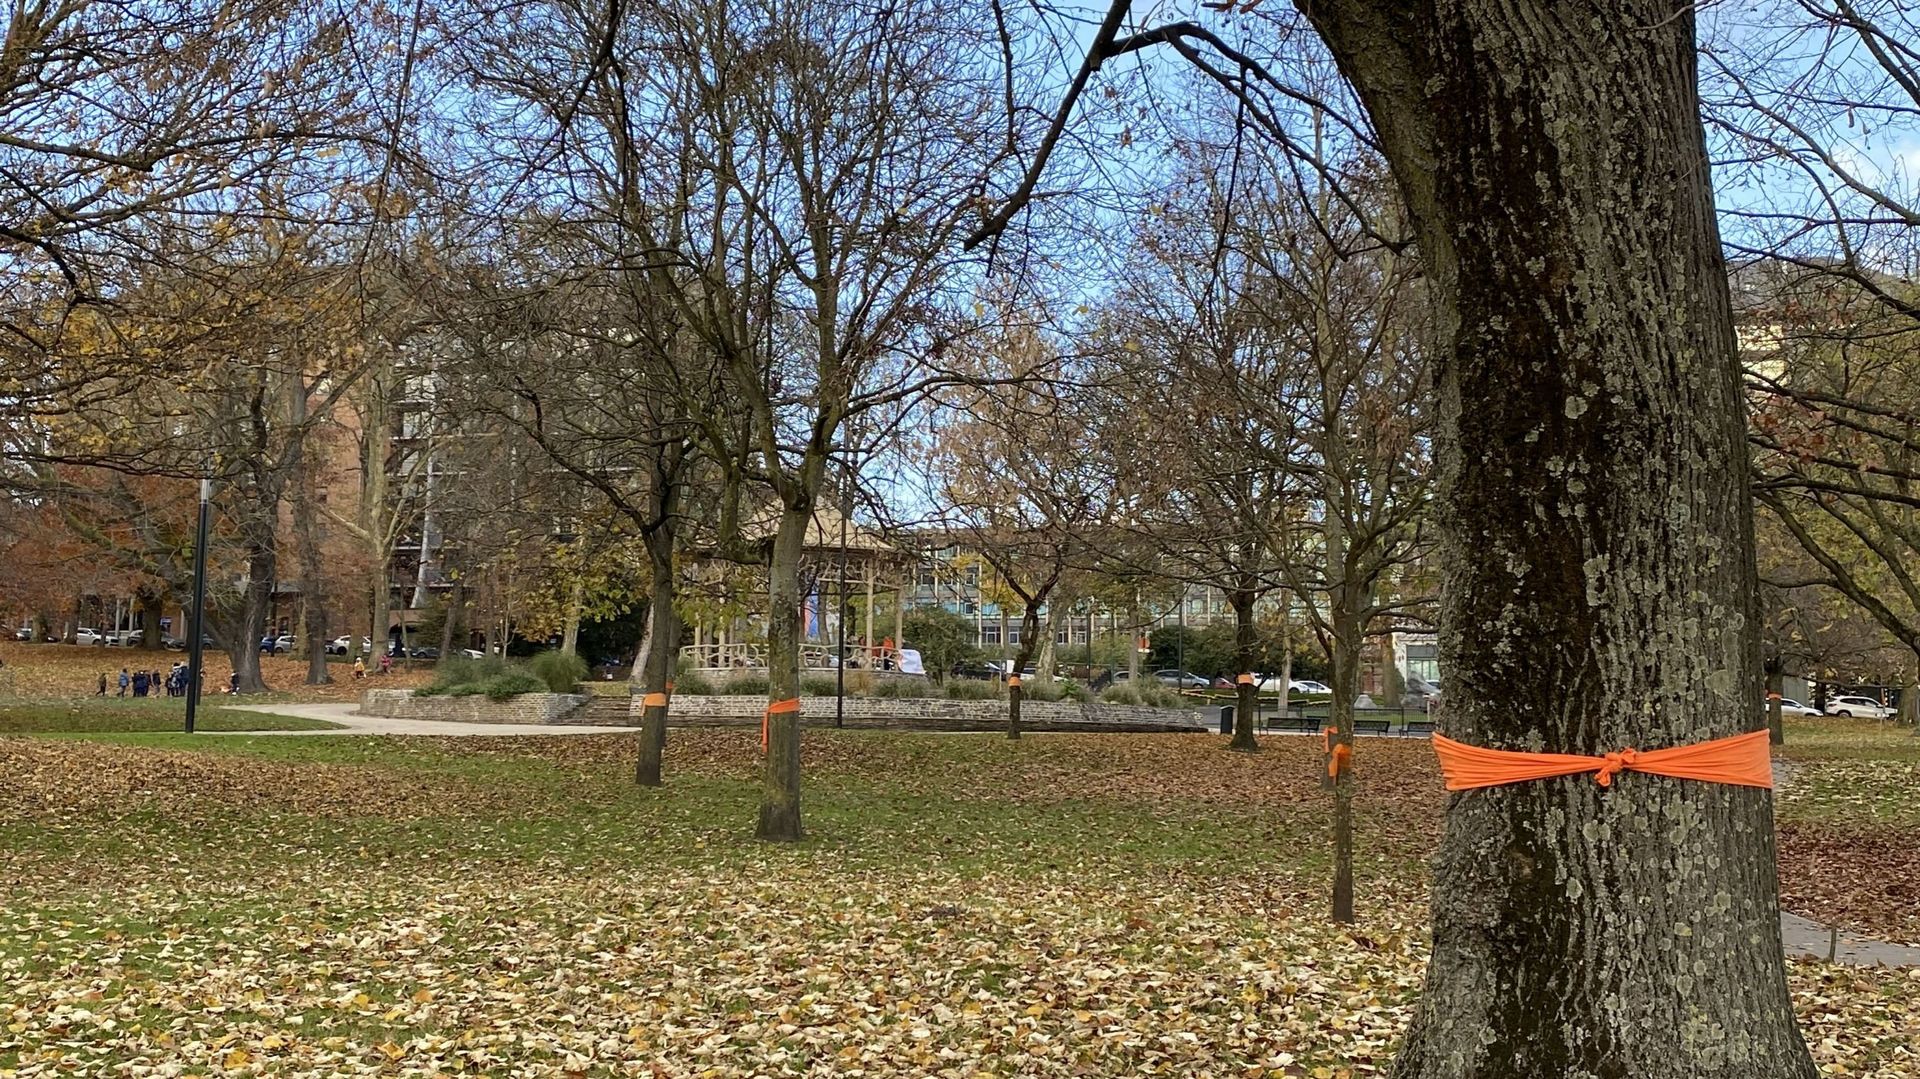 Les arbres du parc Reine Astrid décorés de tissus orange.